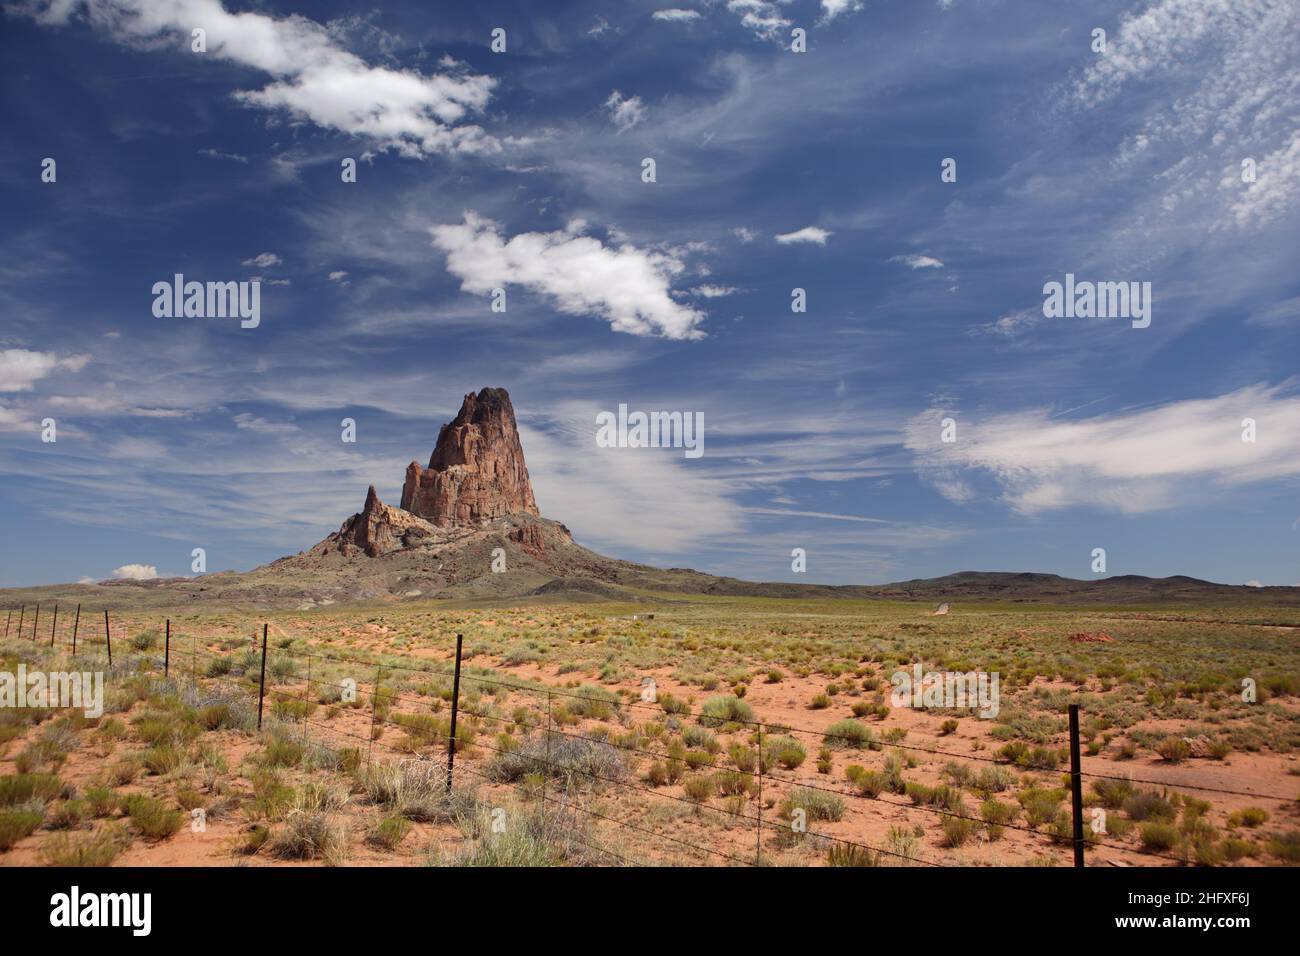 Agathla Peak oder Agathlan, ein erodierter vulkanischer Hals südlich des Monument Valley, Arizona, USA, ragt 1500 Meter über flaches Gelände Stockfoto